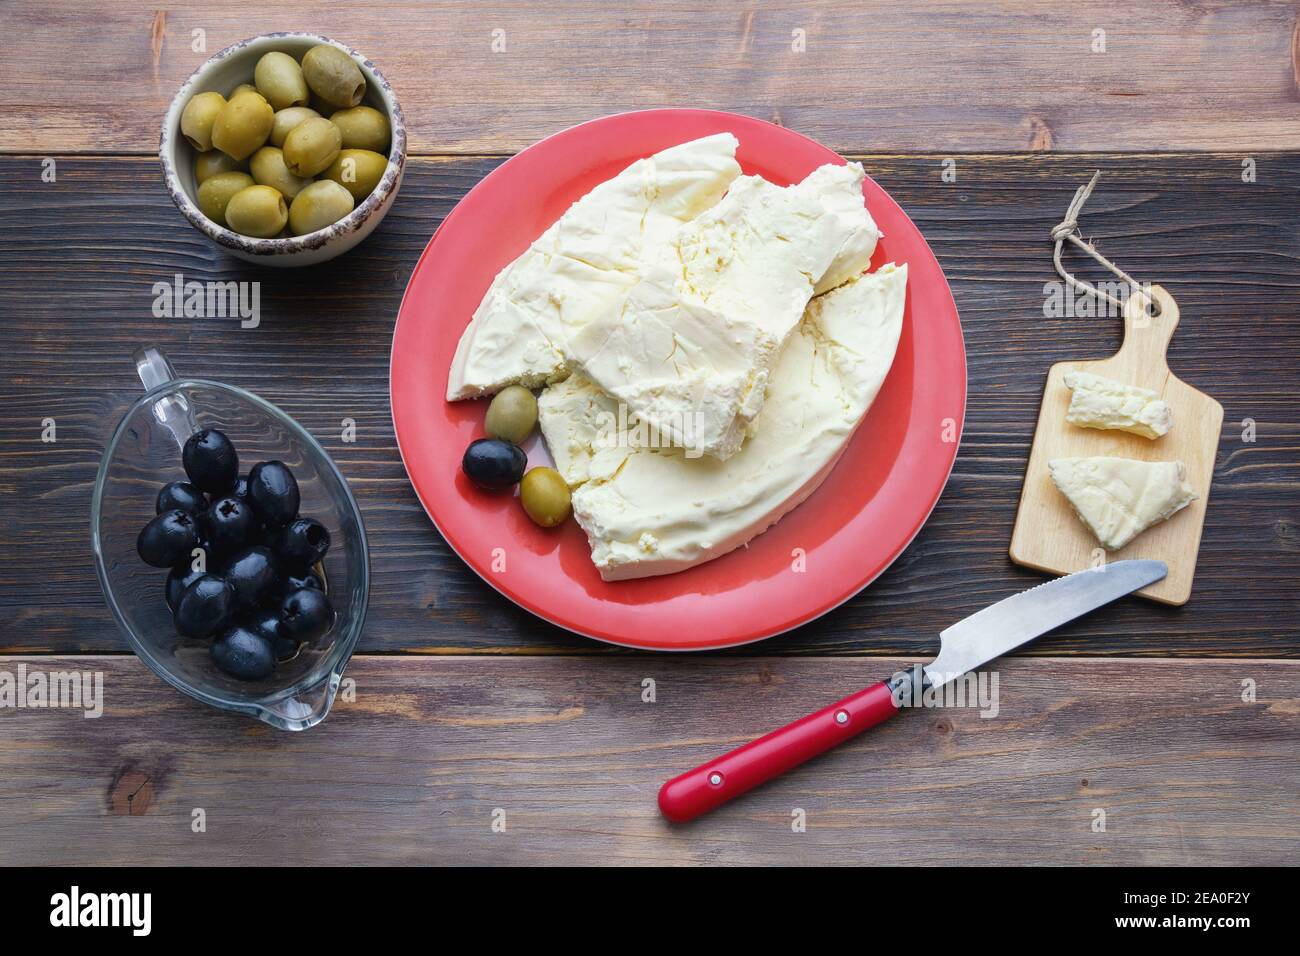 Cuisine des Balkans. Monténégro. Le fromage Pljevaljski est un fromage blanc doux local dans une assiette rouge sur une table rustique sombre Banque D'Images